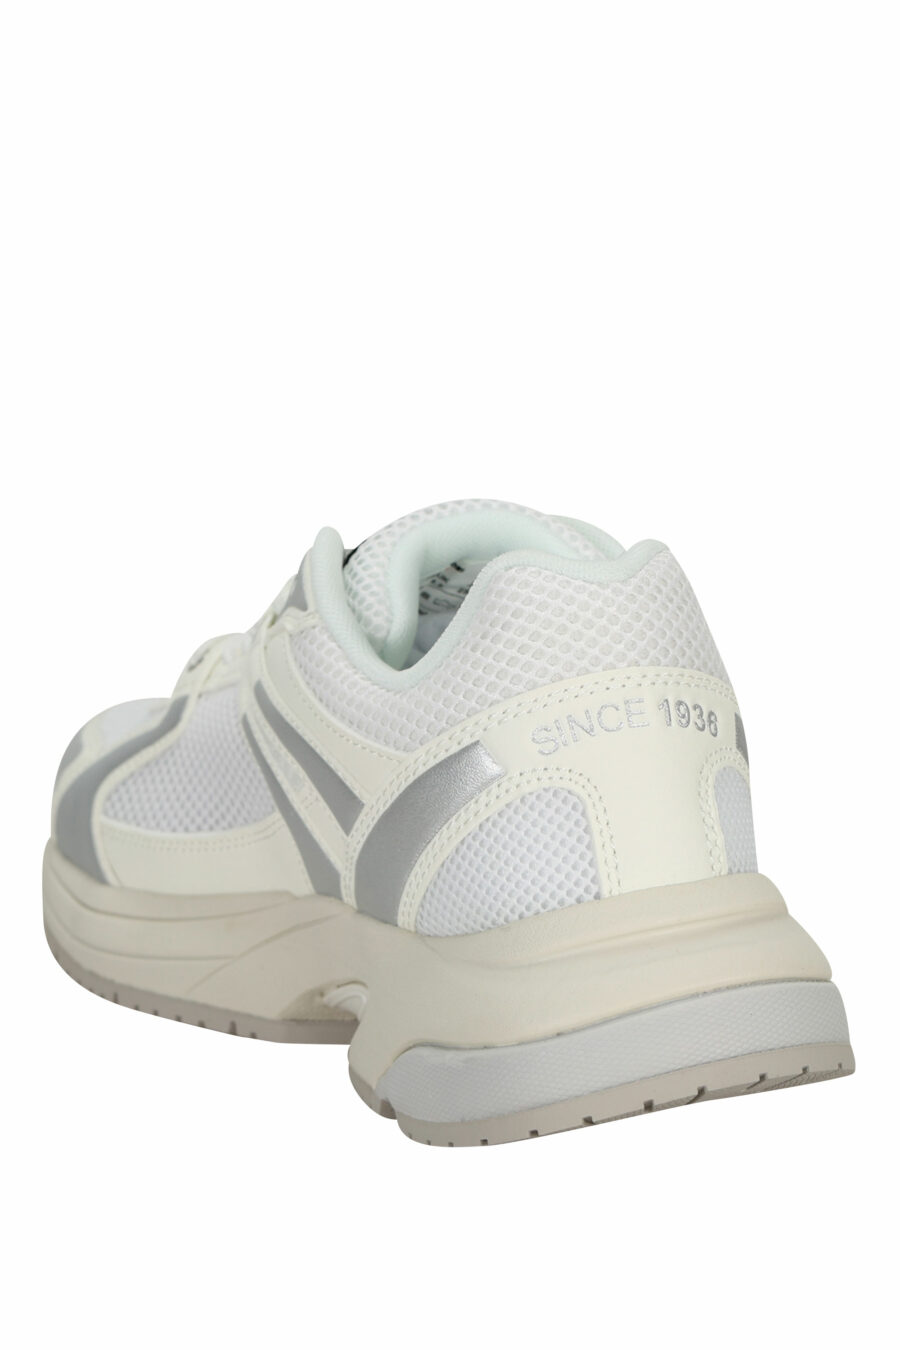 Weiße Schuhe mit silbernem "Adler" und weißem Schild-Logo - 8058156543539 3